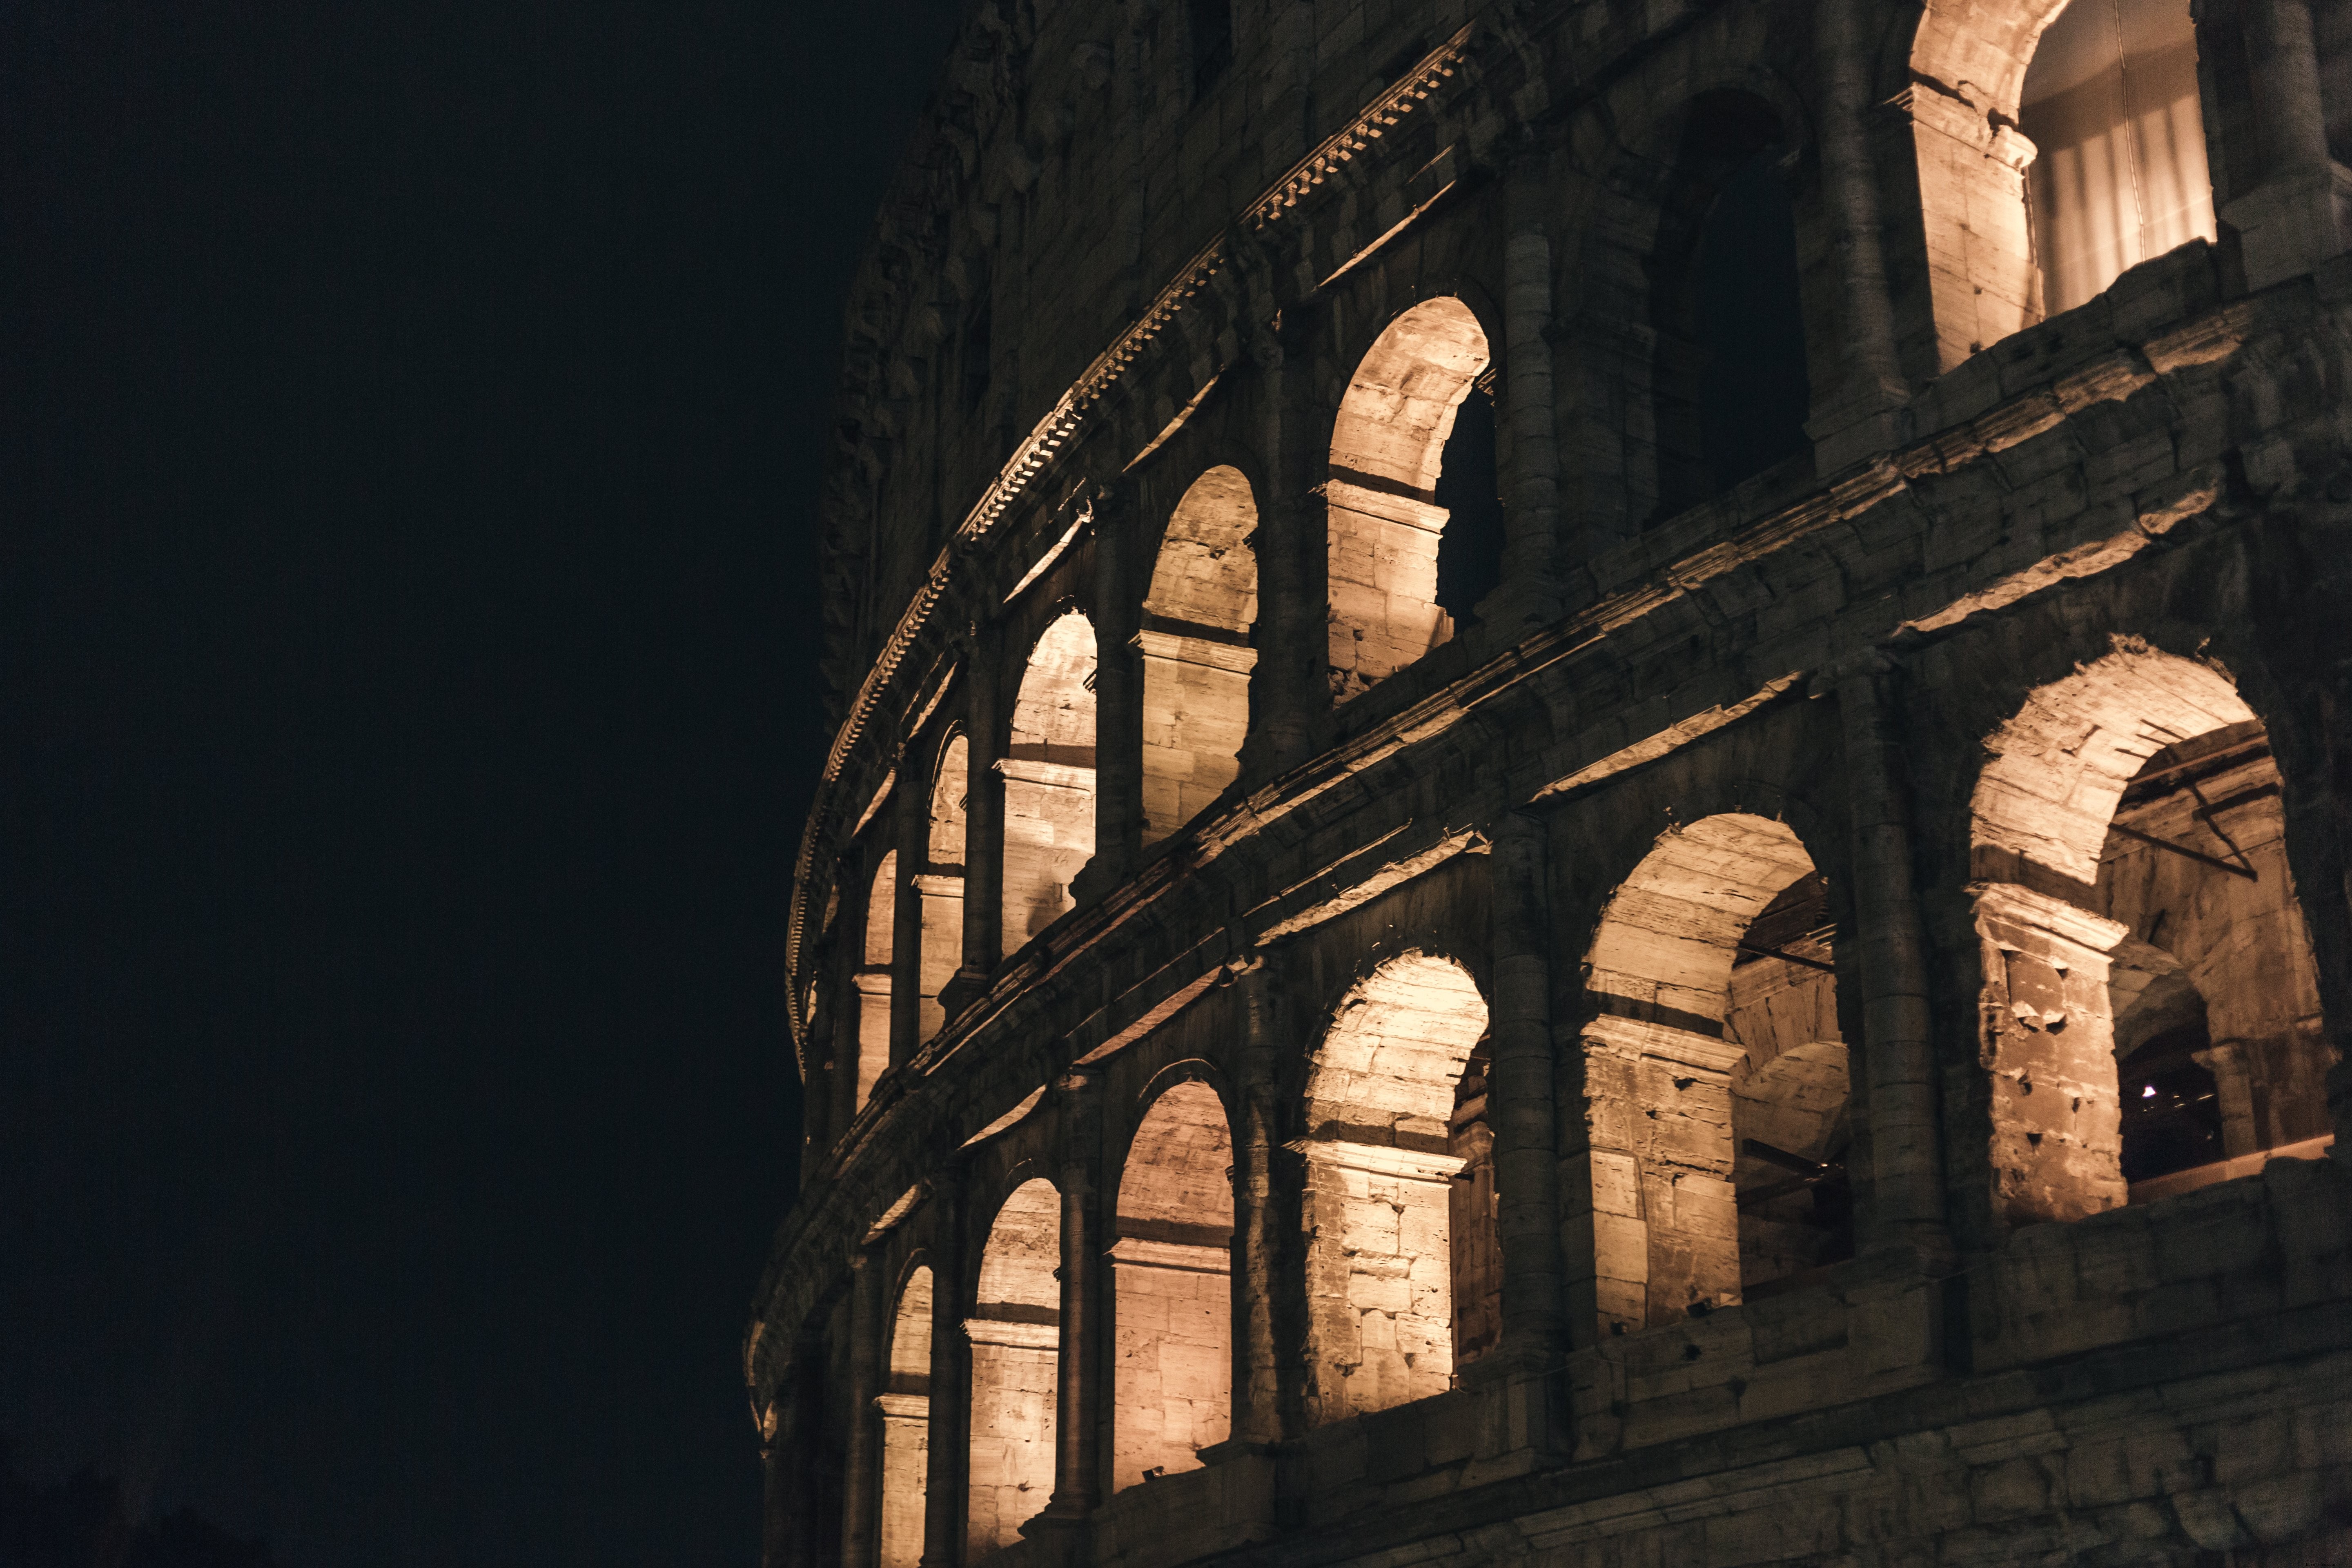 Foto da noite do Coliseu de Roma